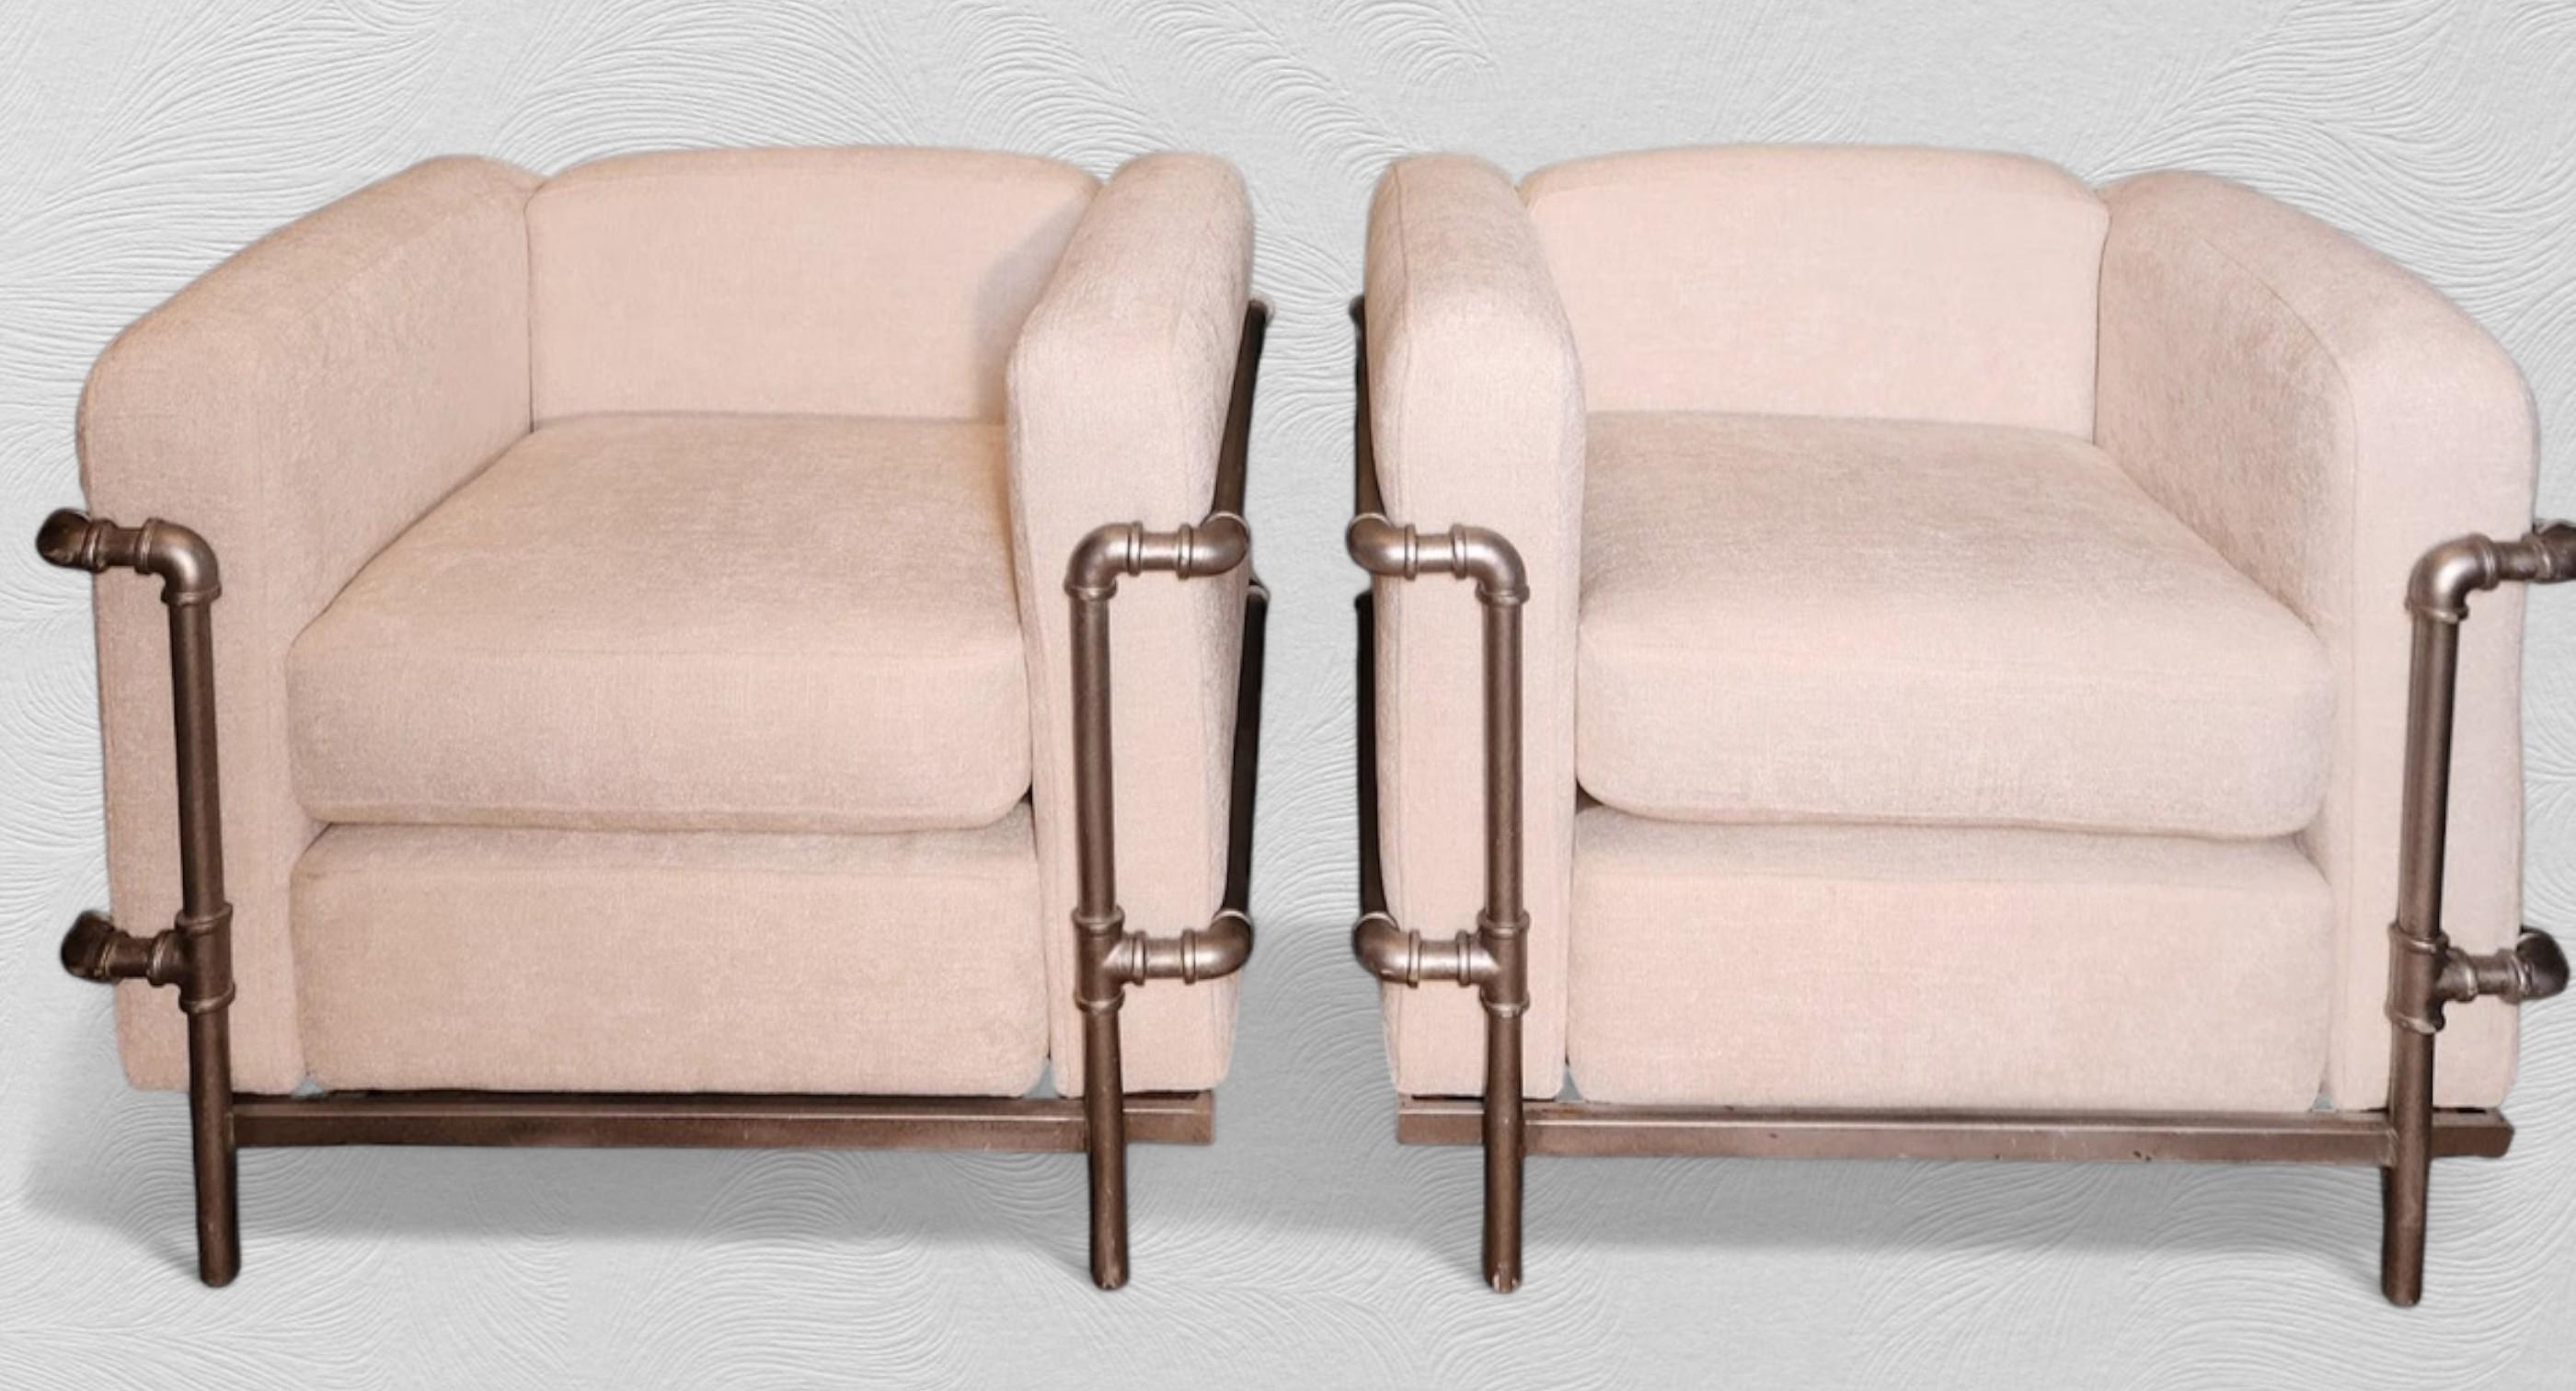 Une paire de chaises longues inspirées de l'icône de Perriand, Le Corbusier et Jeanneret de 1928.  